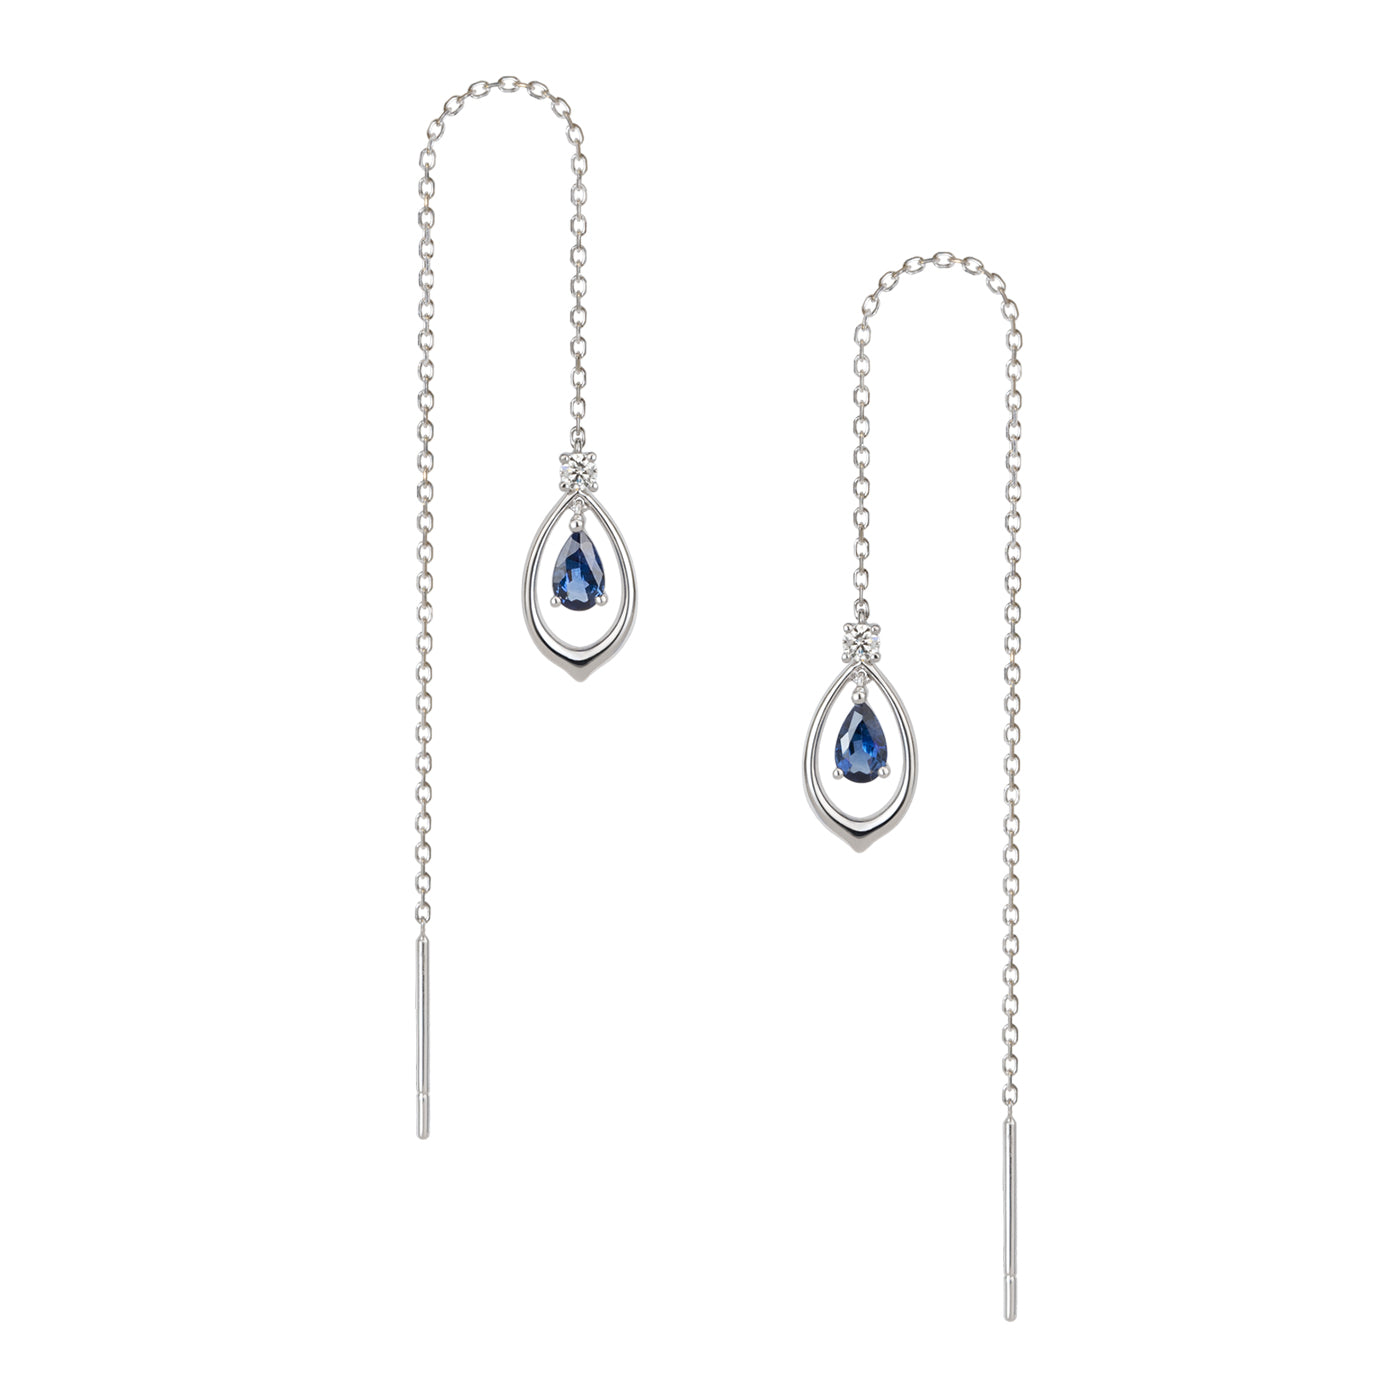 The Heavenly Phoenix - Fine Jewelry Earrings with Sapphire | Shen Yun Shop